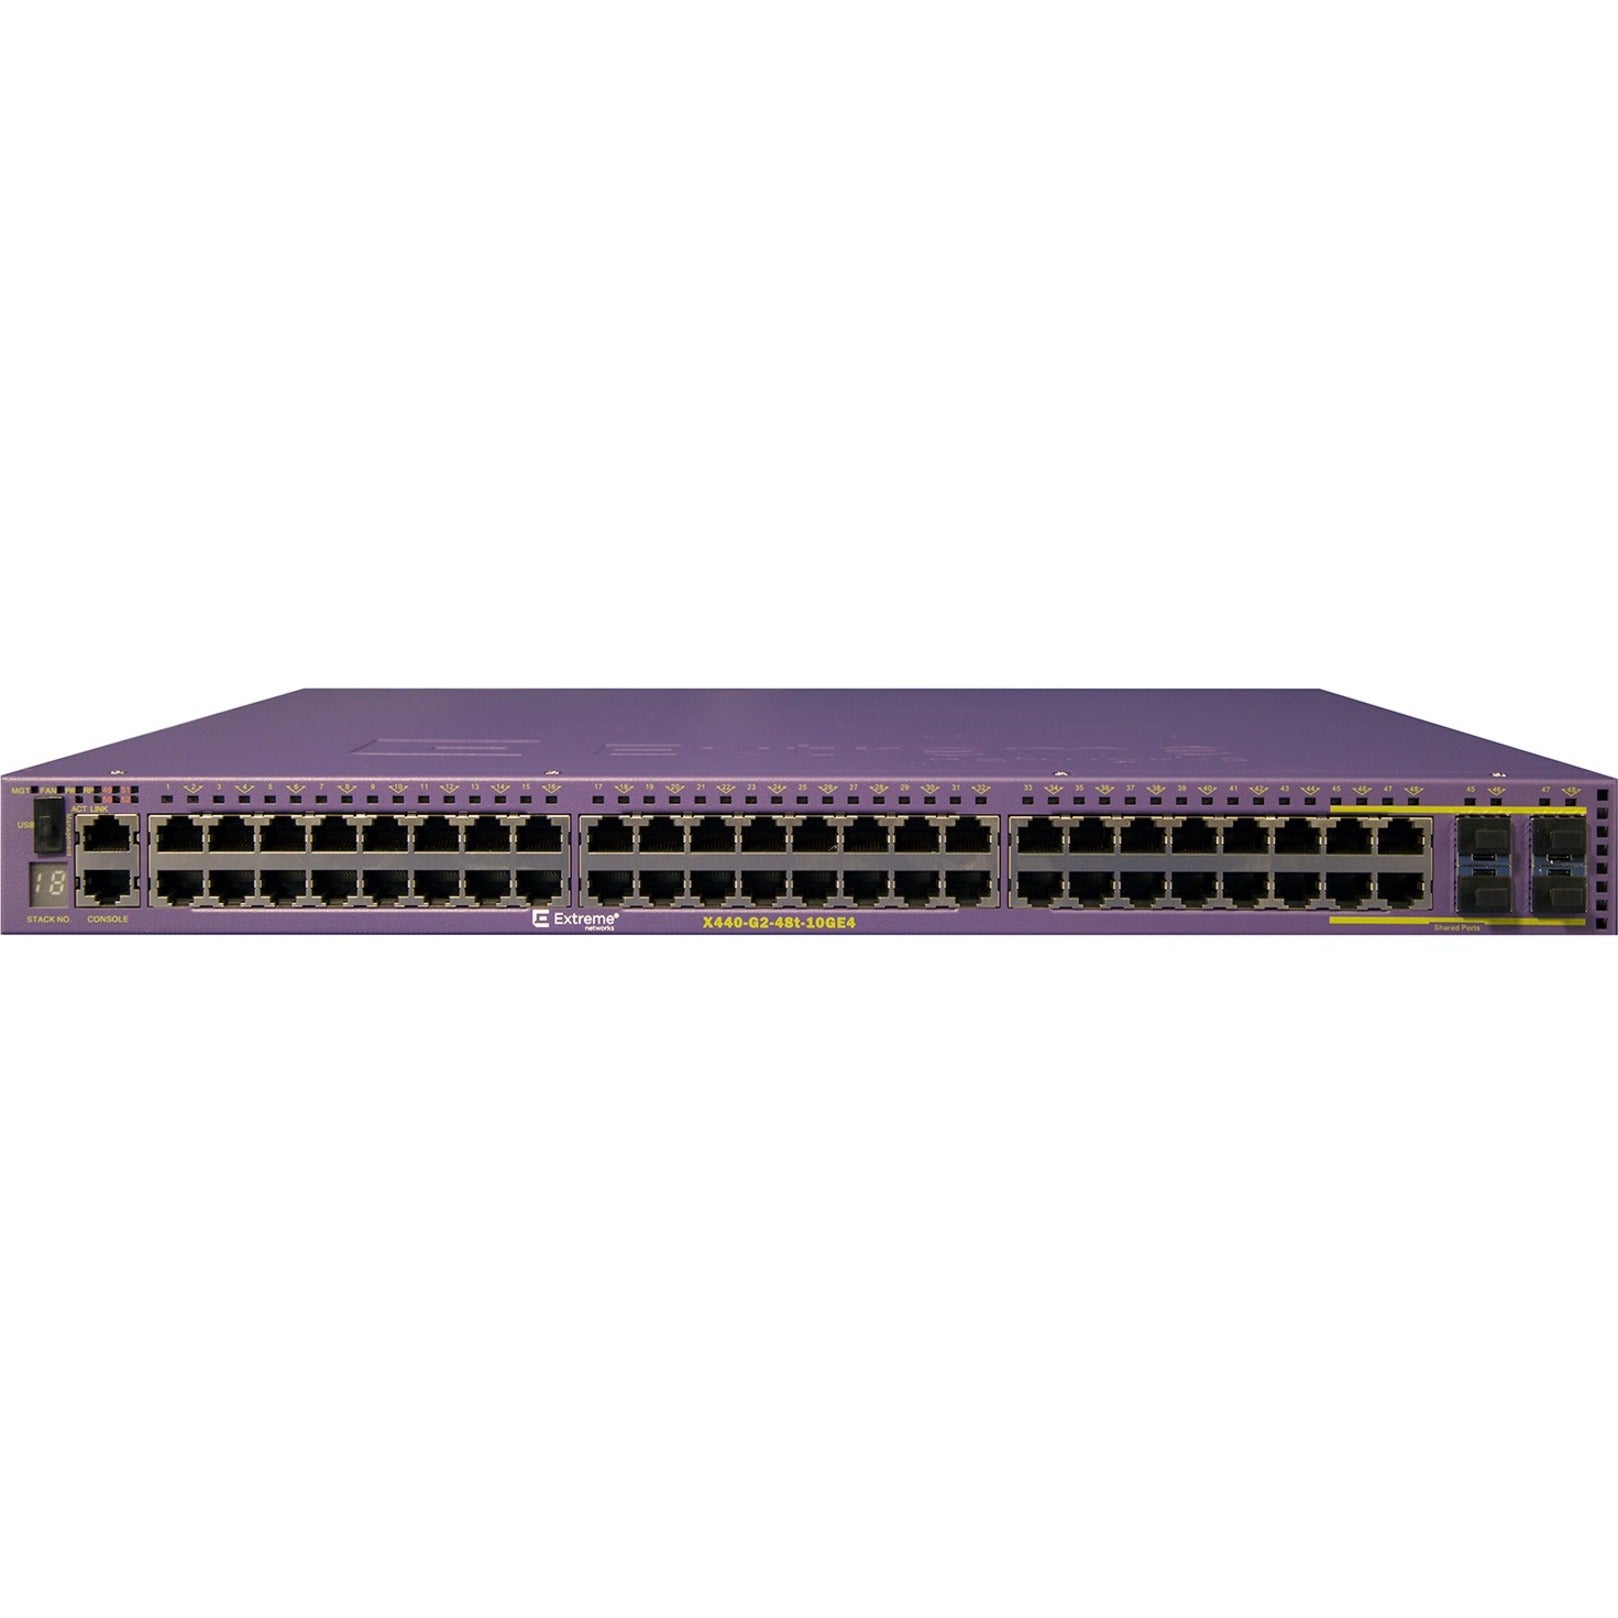 Extreme Networks 16534 X440-G2-48t-10GE4 Ethernet Switch Gigabit Ethernet 48 Network Ports -   Ekstreme netværk 16534 X440-G2-48t-10GE4 Ethernet Switch Gigabit Ethernet 48 Netværksporte